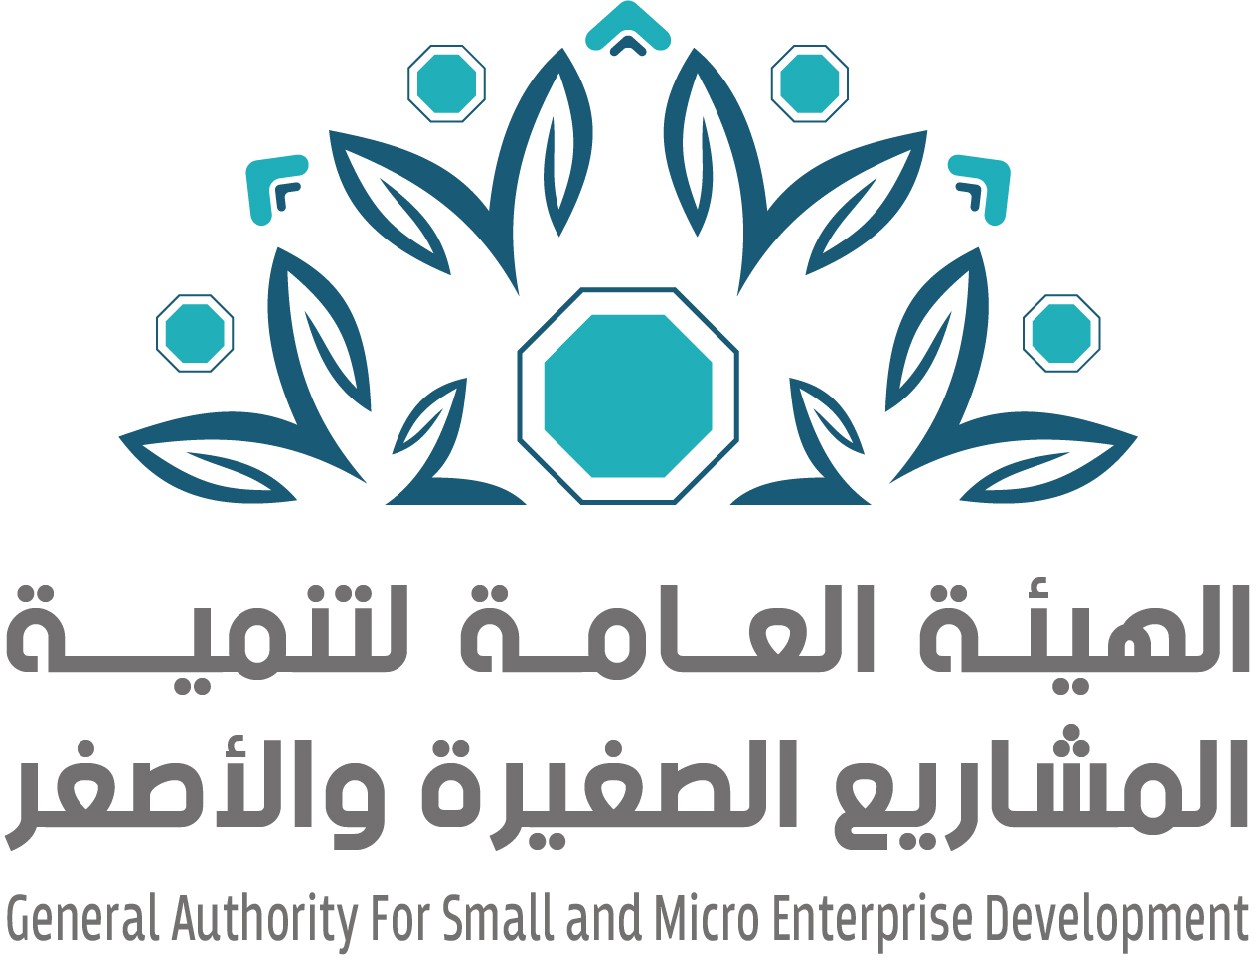 الهيئة العامة لتنمية المشاريع الصغيرة والأصغر